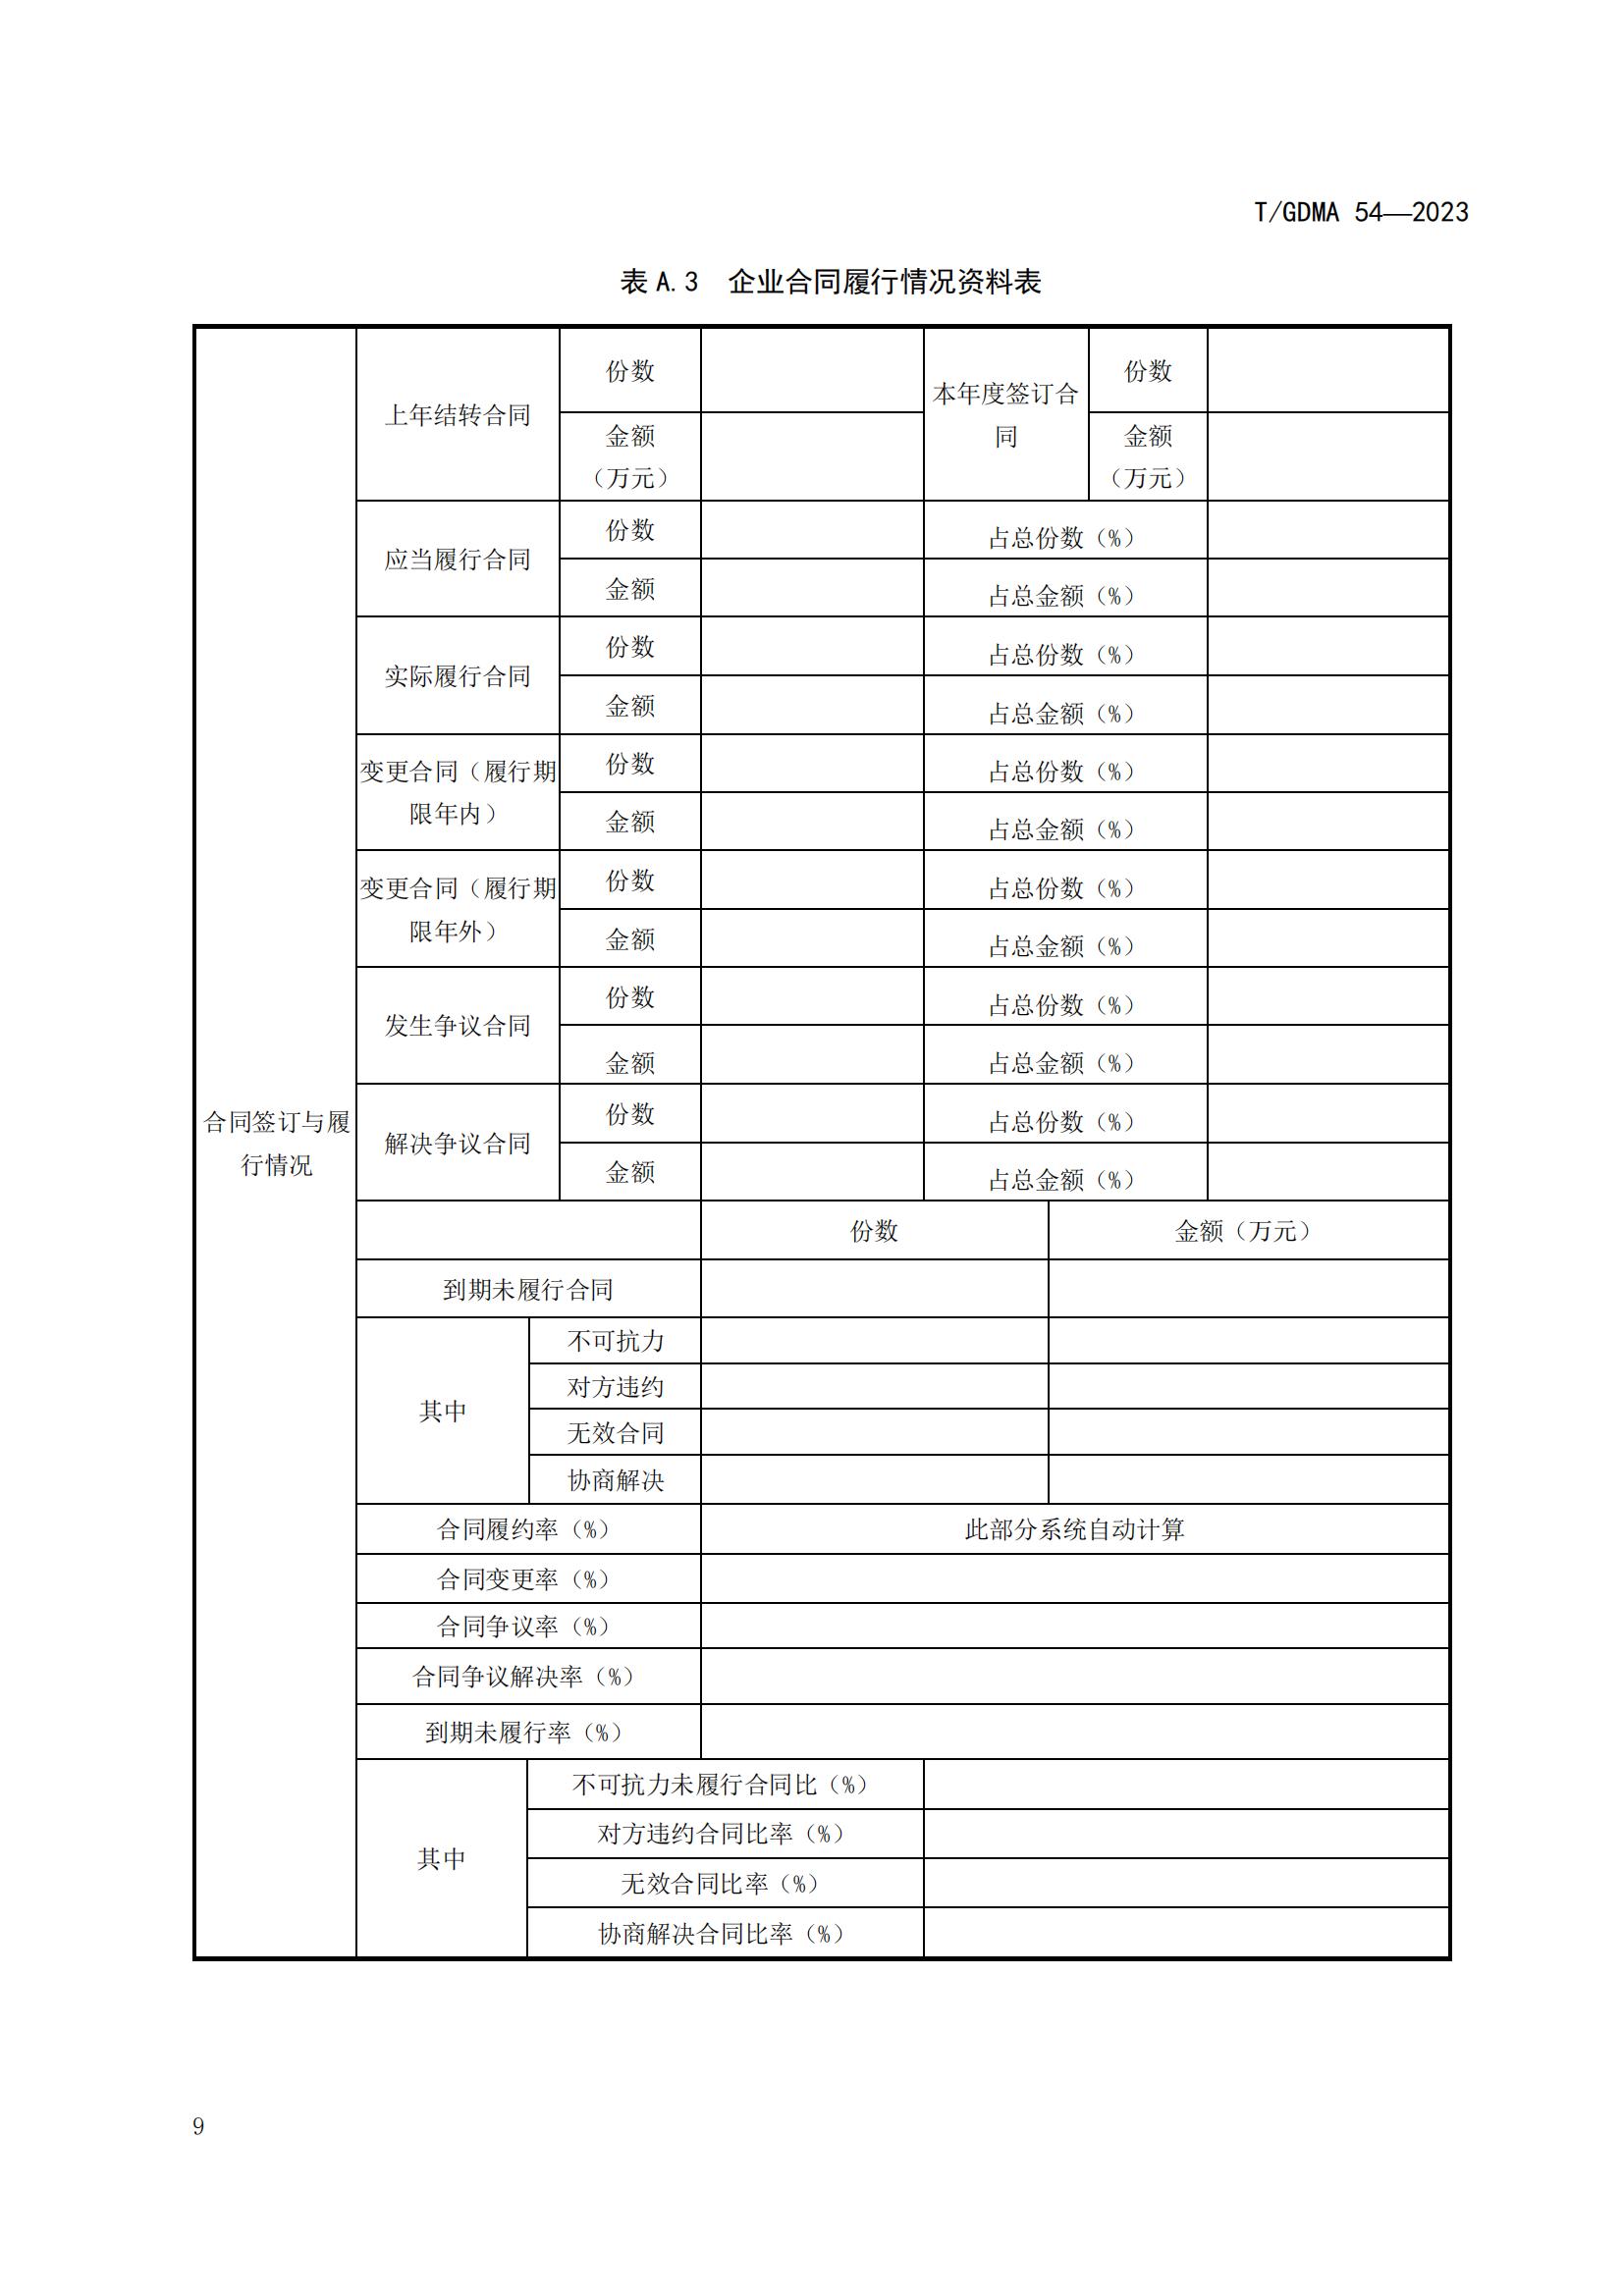 20230427 广东省诚信经营企业评定规范意见（发布稿）(1)(1)_09.jpg